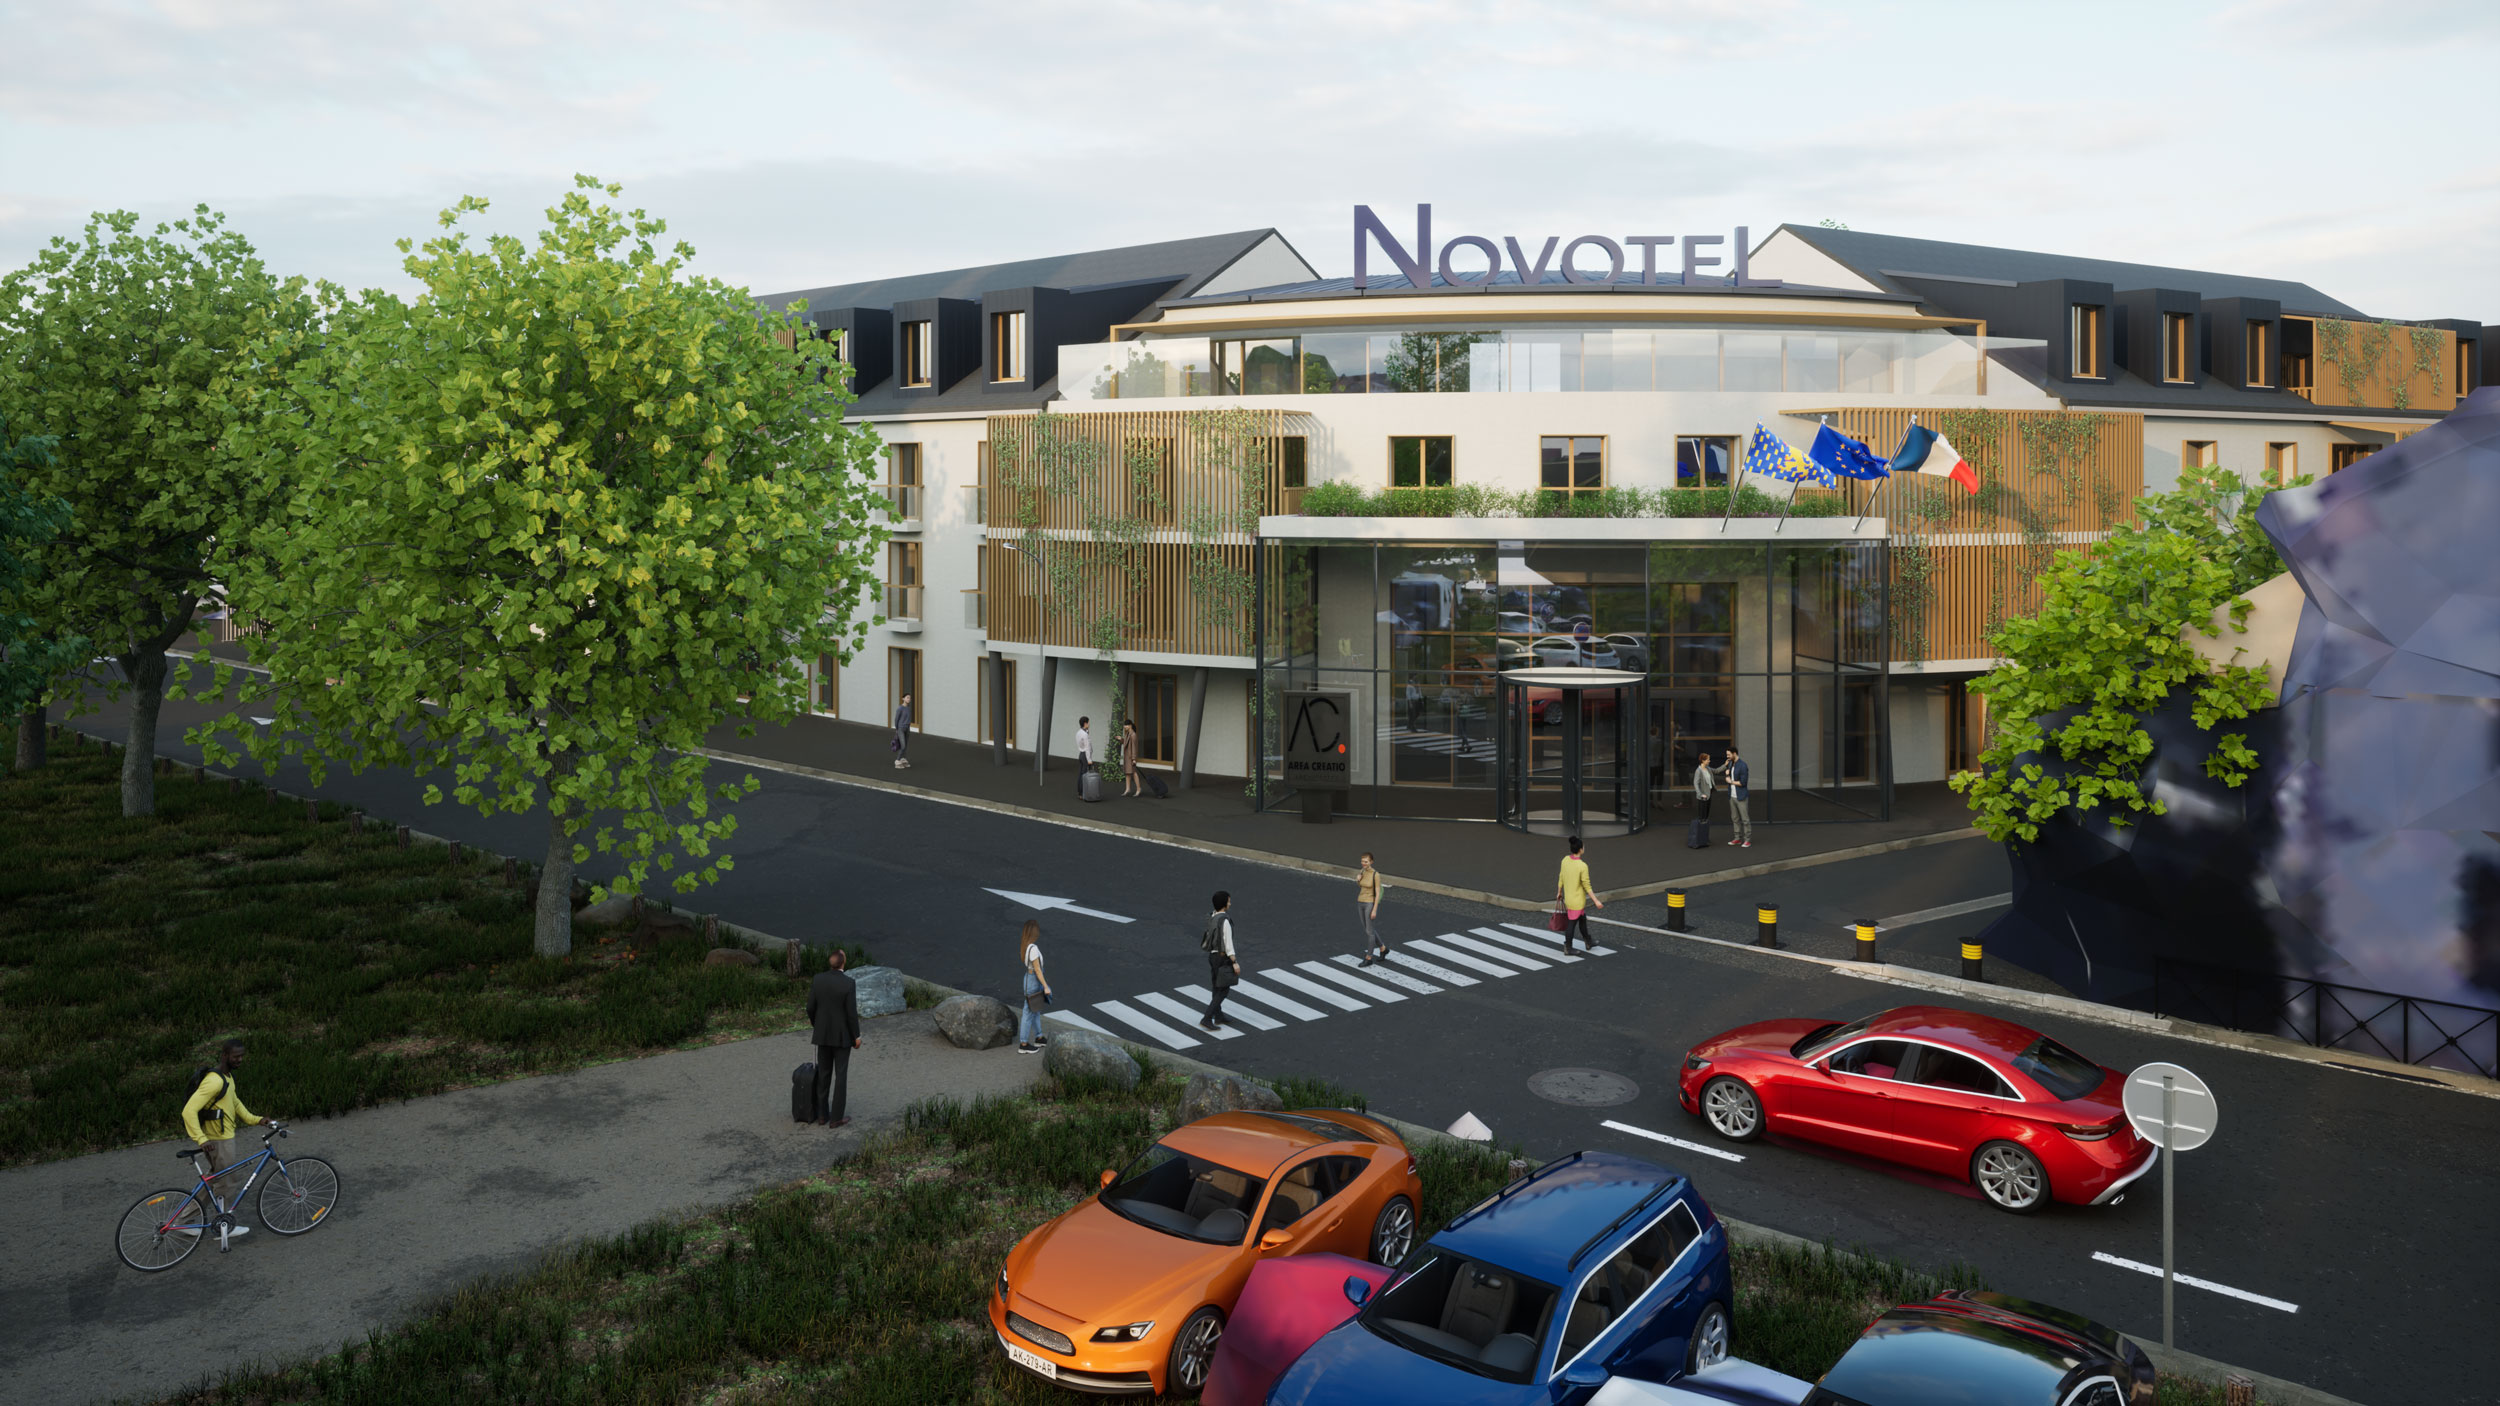 Mission architecturale pour la construction d'un hôtel Novotel à Auxerre